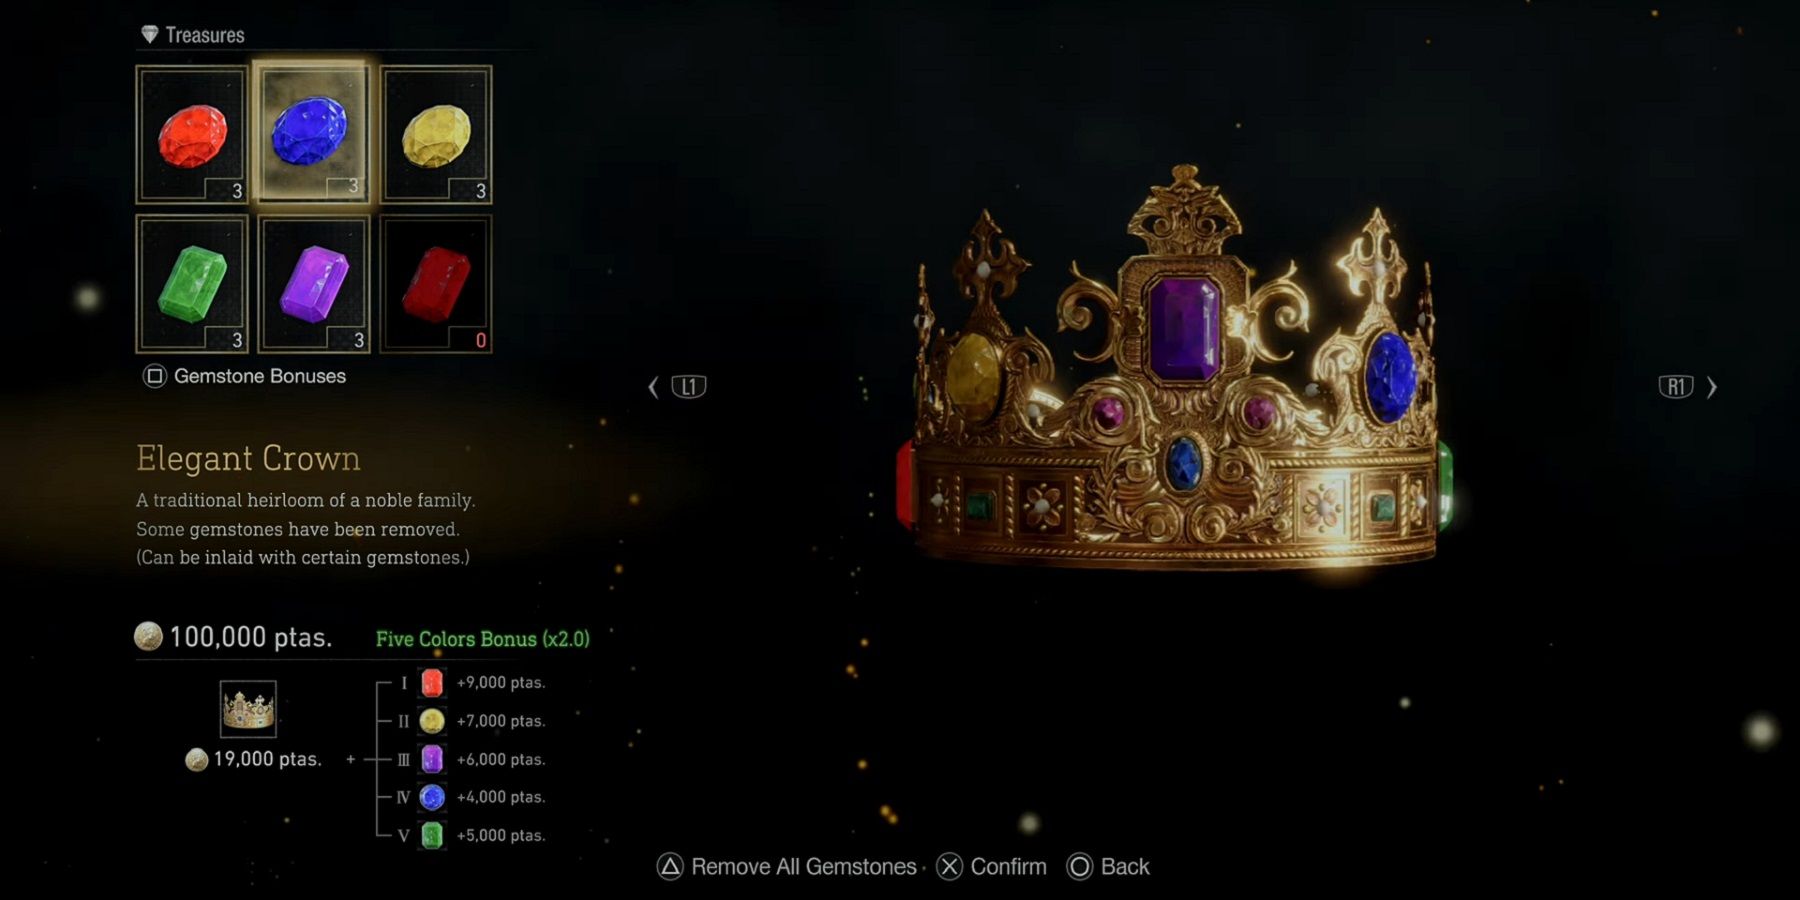 The Elegant Crown from Resident Evil 4.